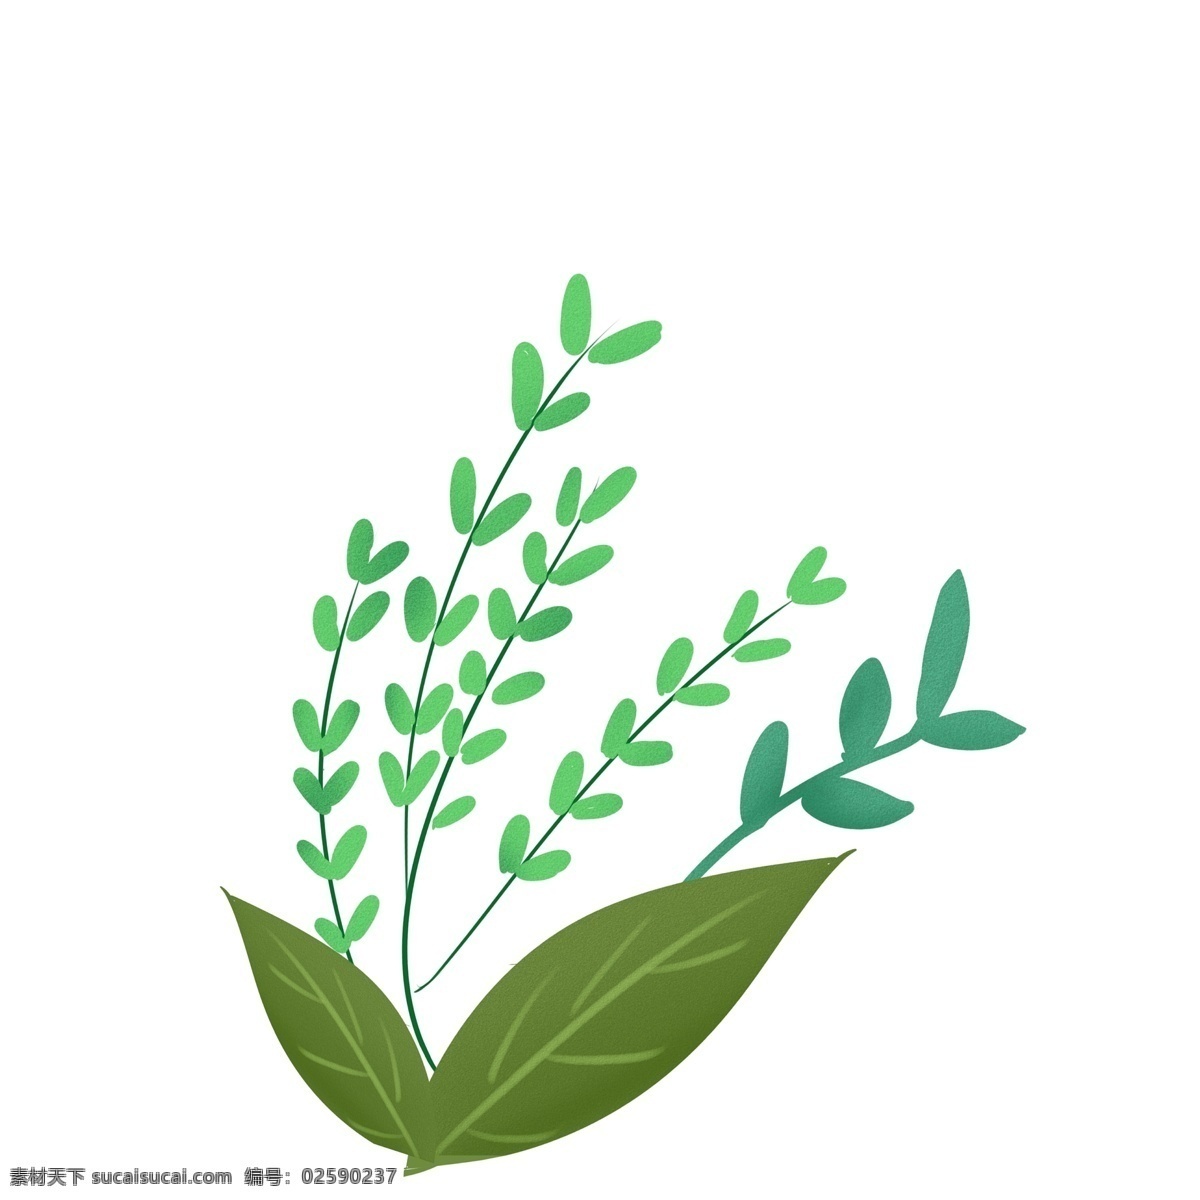 绿色 树叶 植物 手绘 绿叶 大自然 插画 可爱 小清新 装饰 背景装饰 边框设计